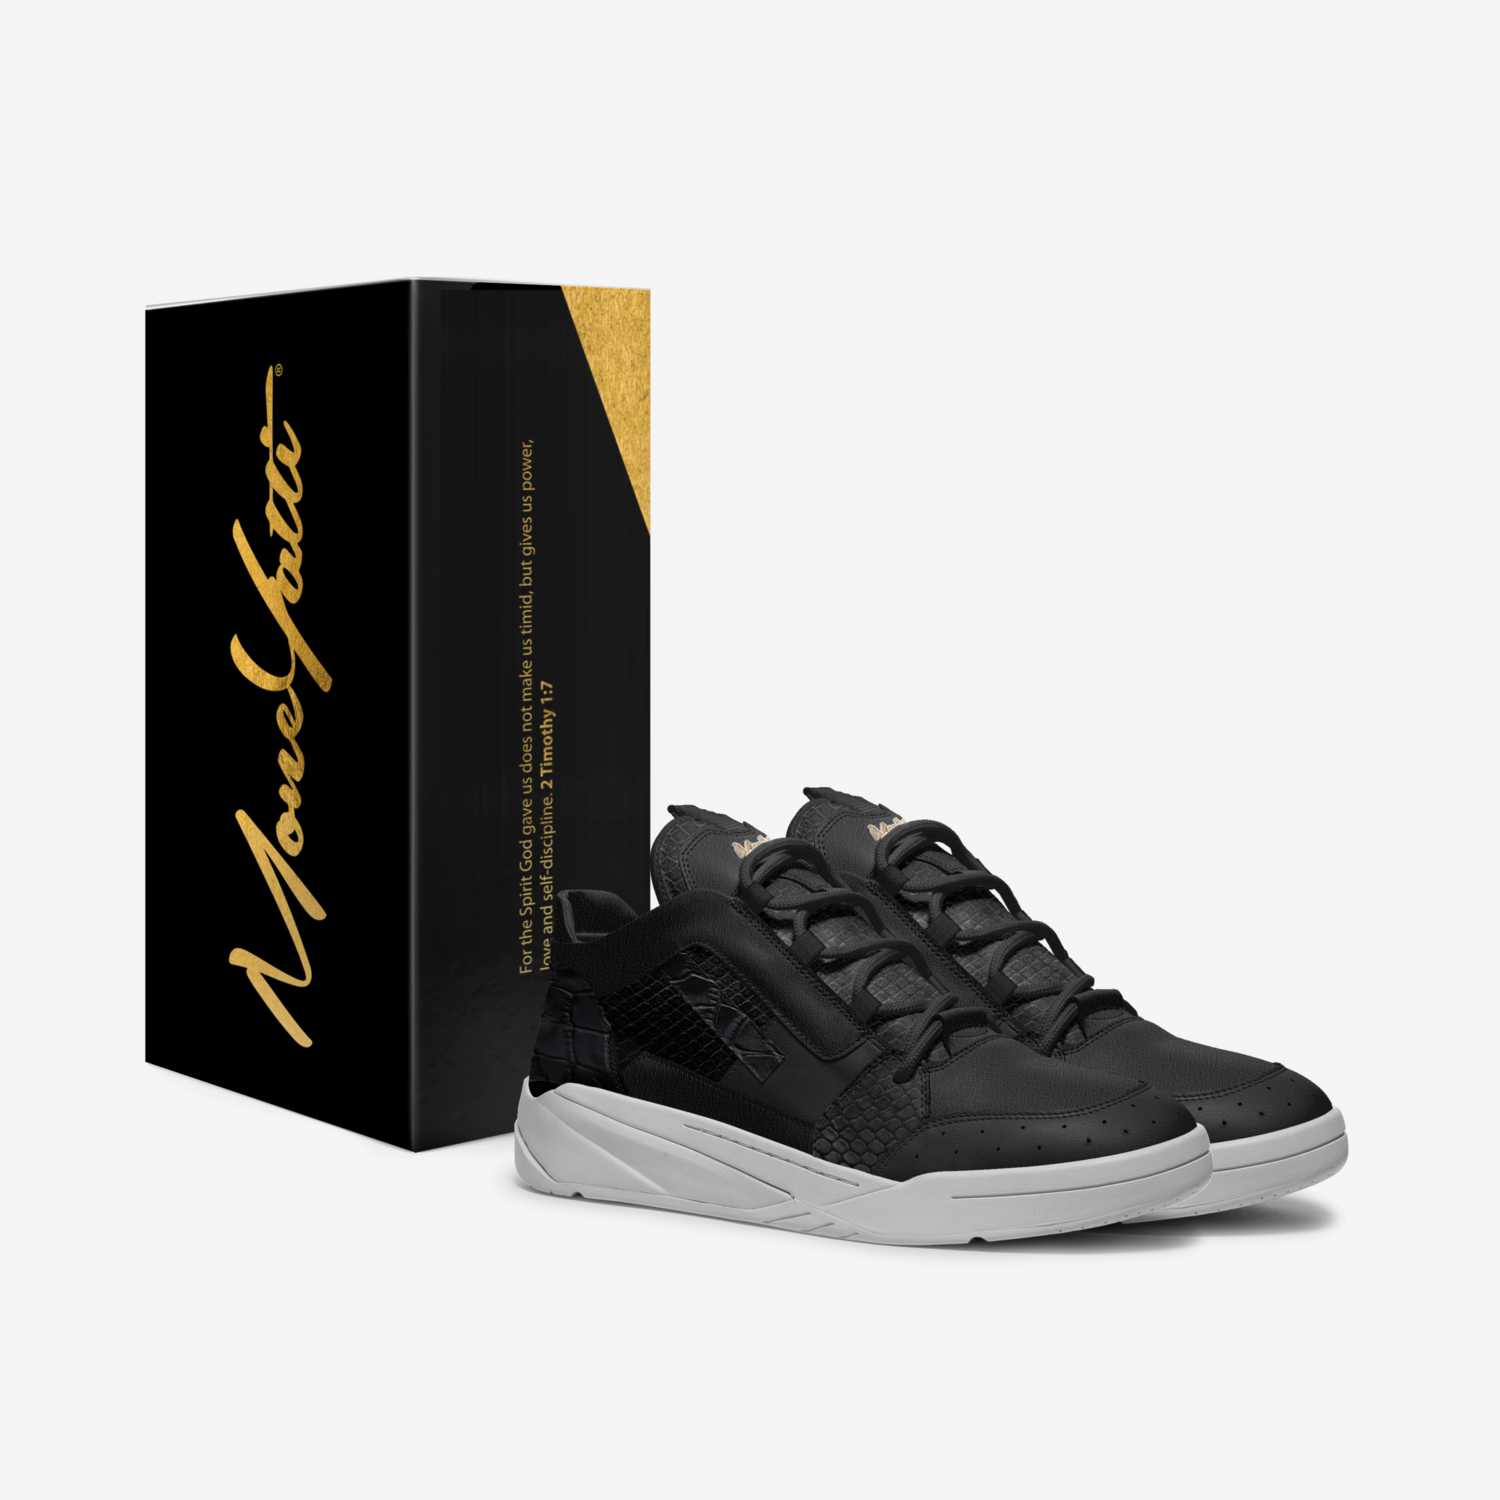 MONEYATTI TURBO 001 custom made in Italy shoes by Moneyatti Brand | Box view